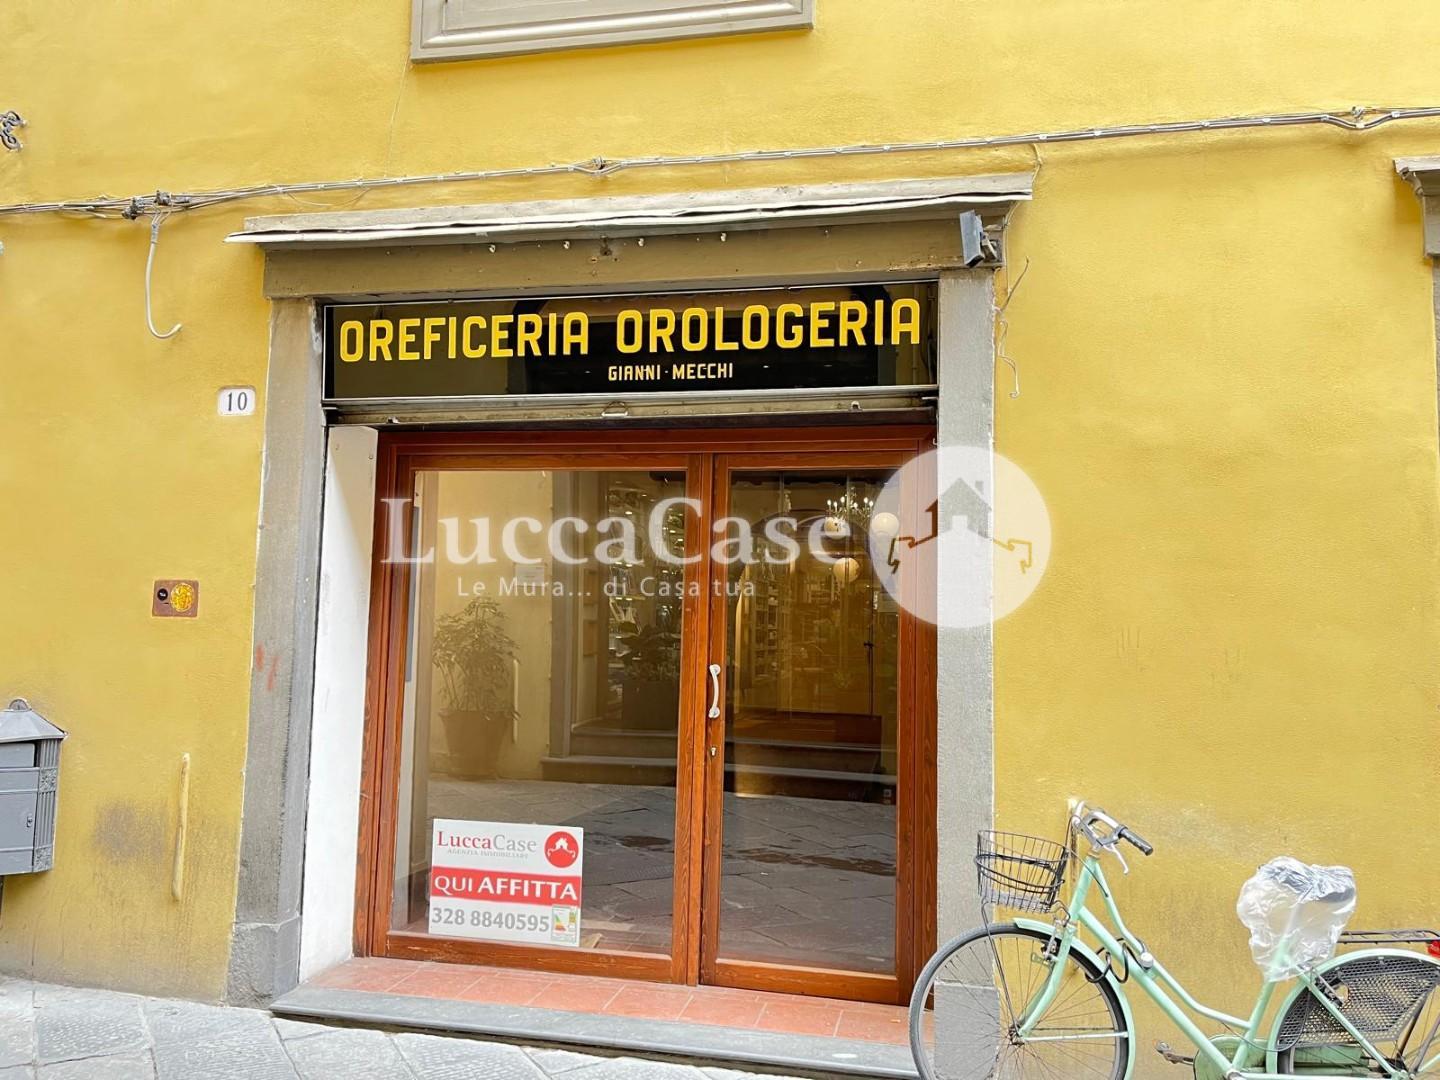 Geschäftsräume / Fonds in gewerbliche vermietung zu Lucca